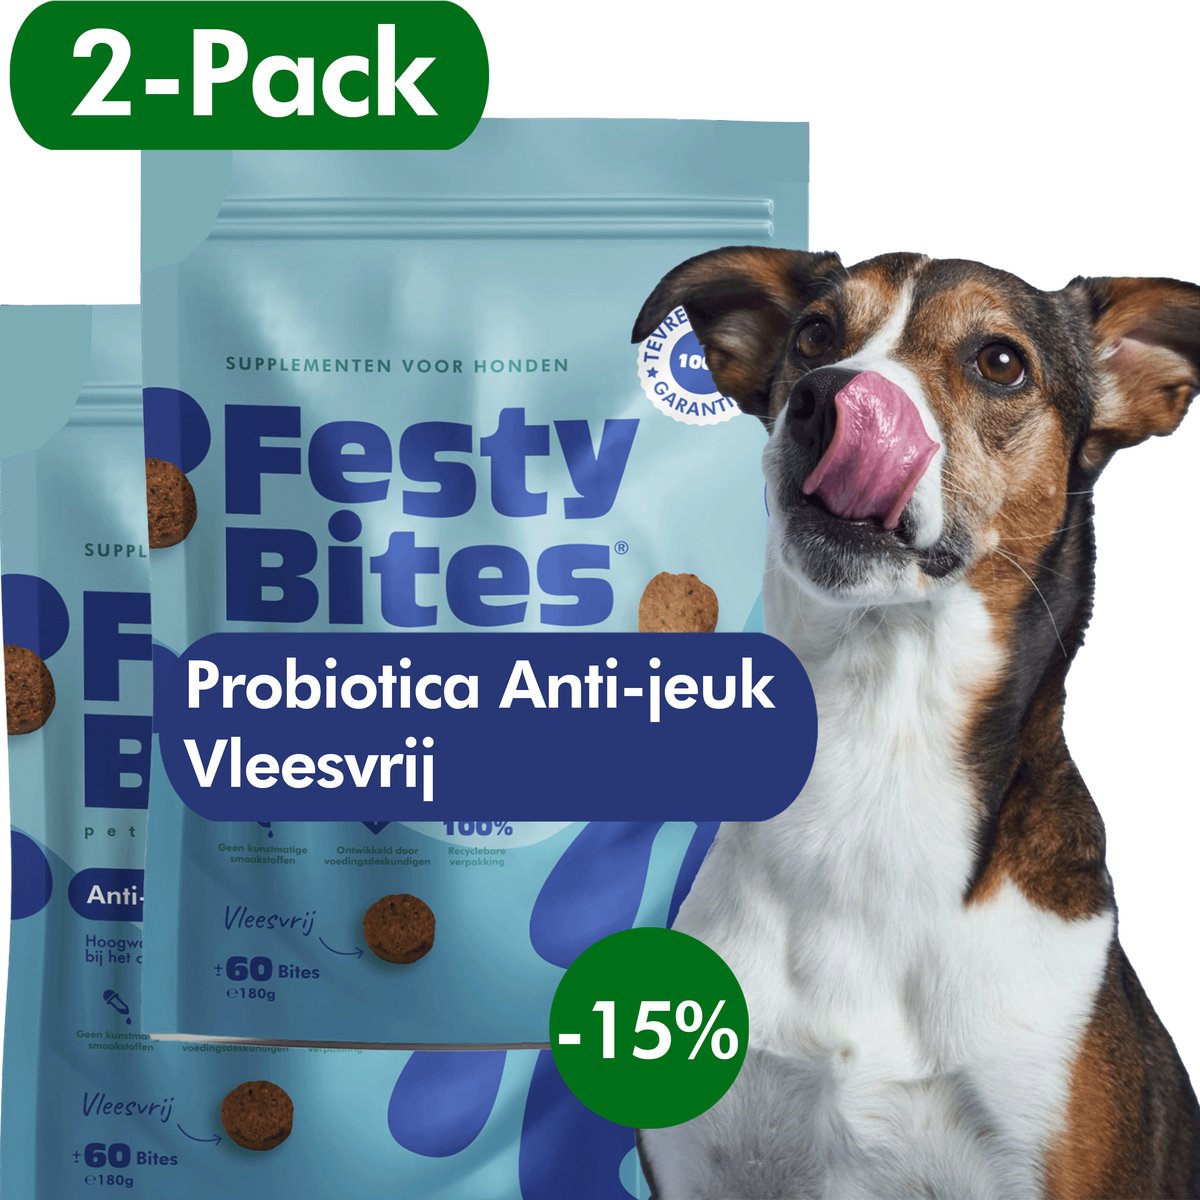 Probiotica Anti Jeuk & Poten Likken - Vleesvrij - Probiotica Hond tegen jeuk - Hondensnacks - FAVV goedgekeurd - Brievenbuspakket - VOORDEELBUNDEL (2 Pack) - 120 Hondensnoepjes